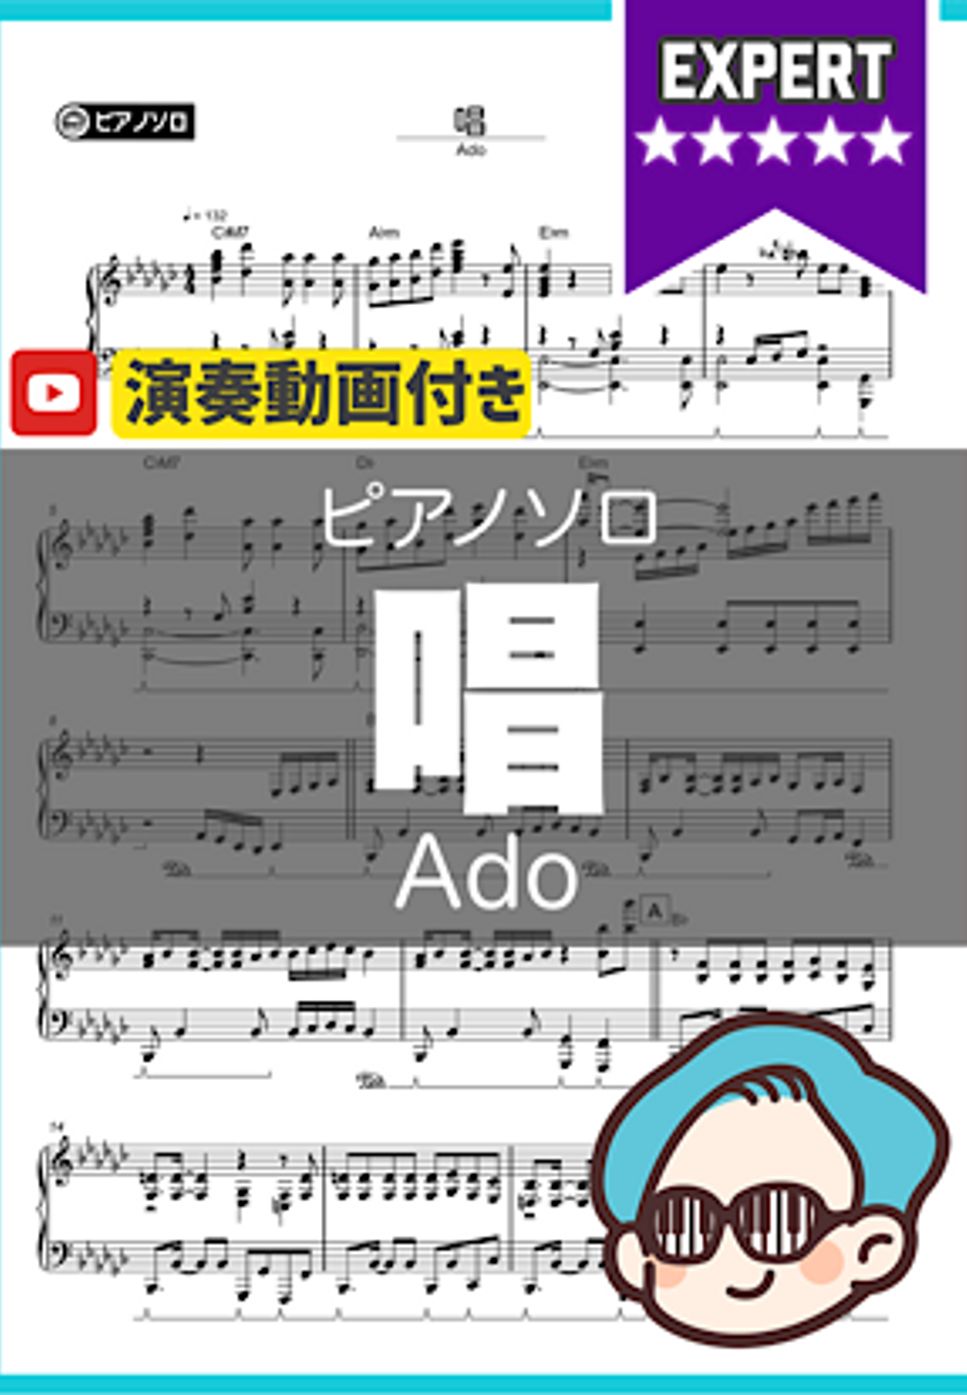 Ado - 唱 by シータピアノ